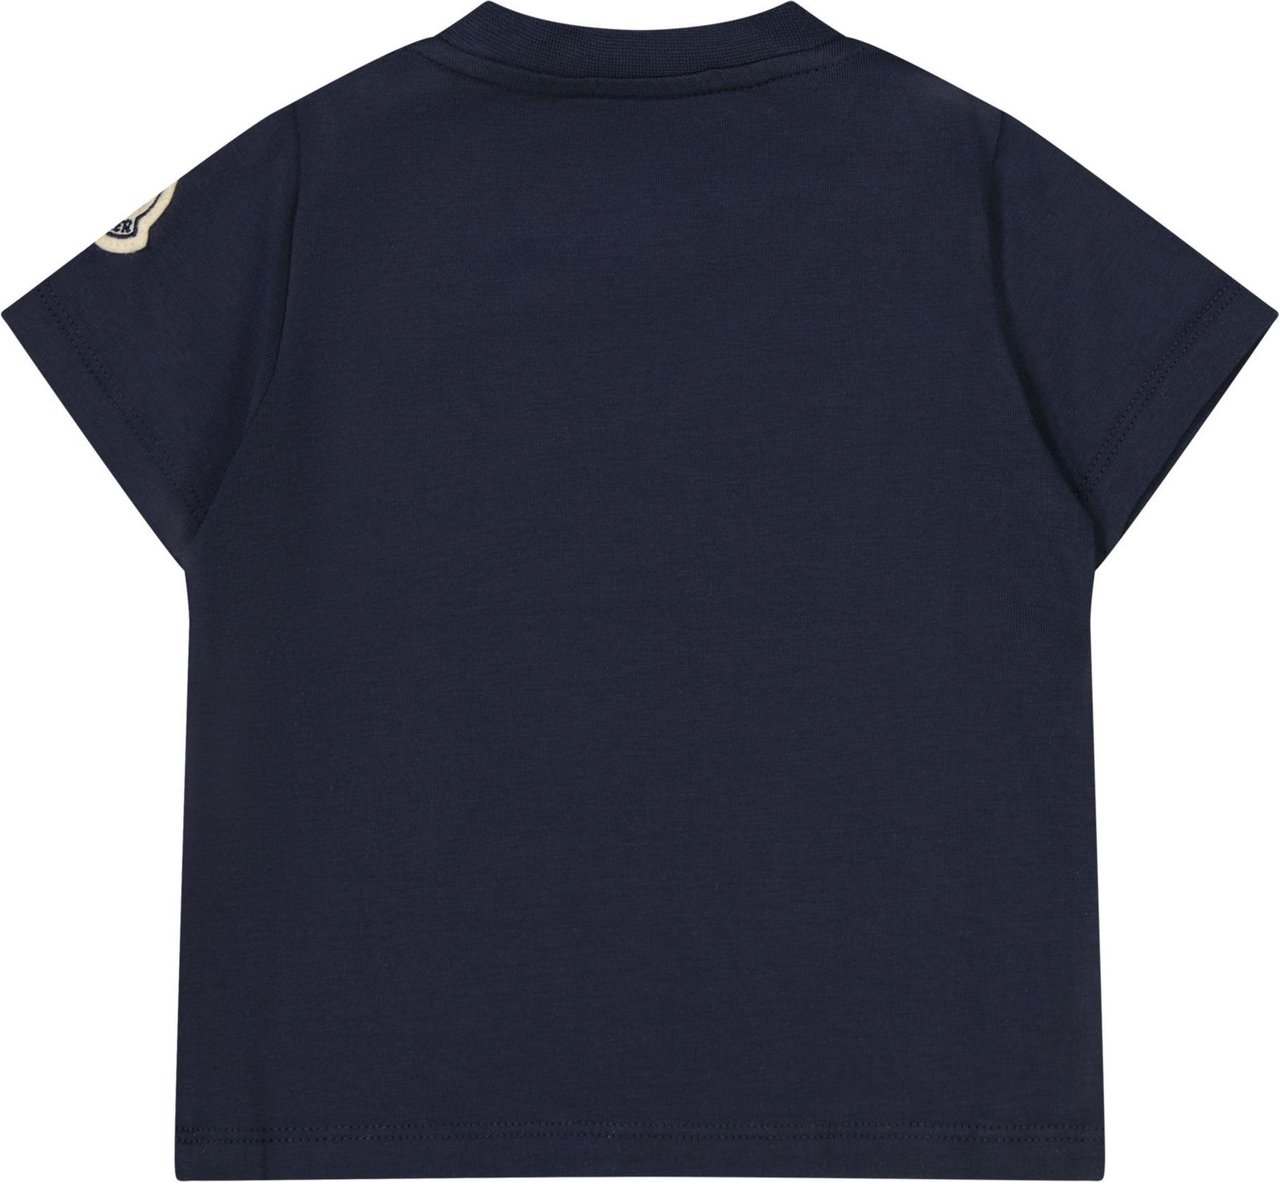 Moncler Moncler 8C00022 8790N baby t-shirt navy Blauw